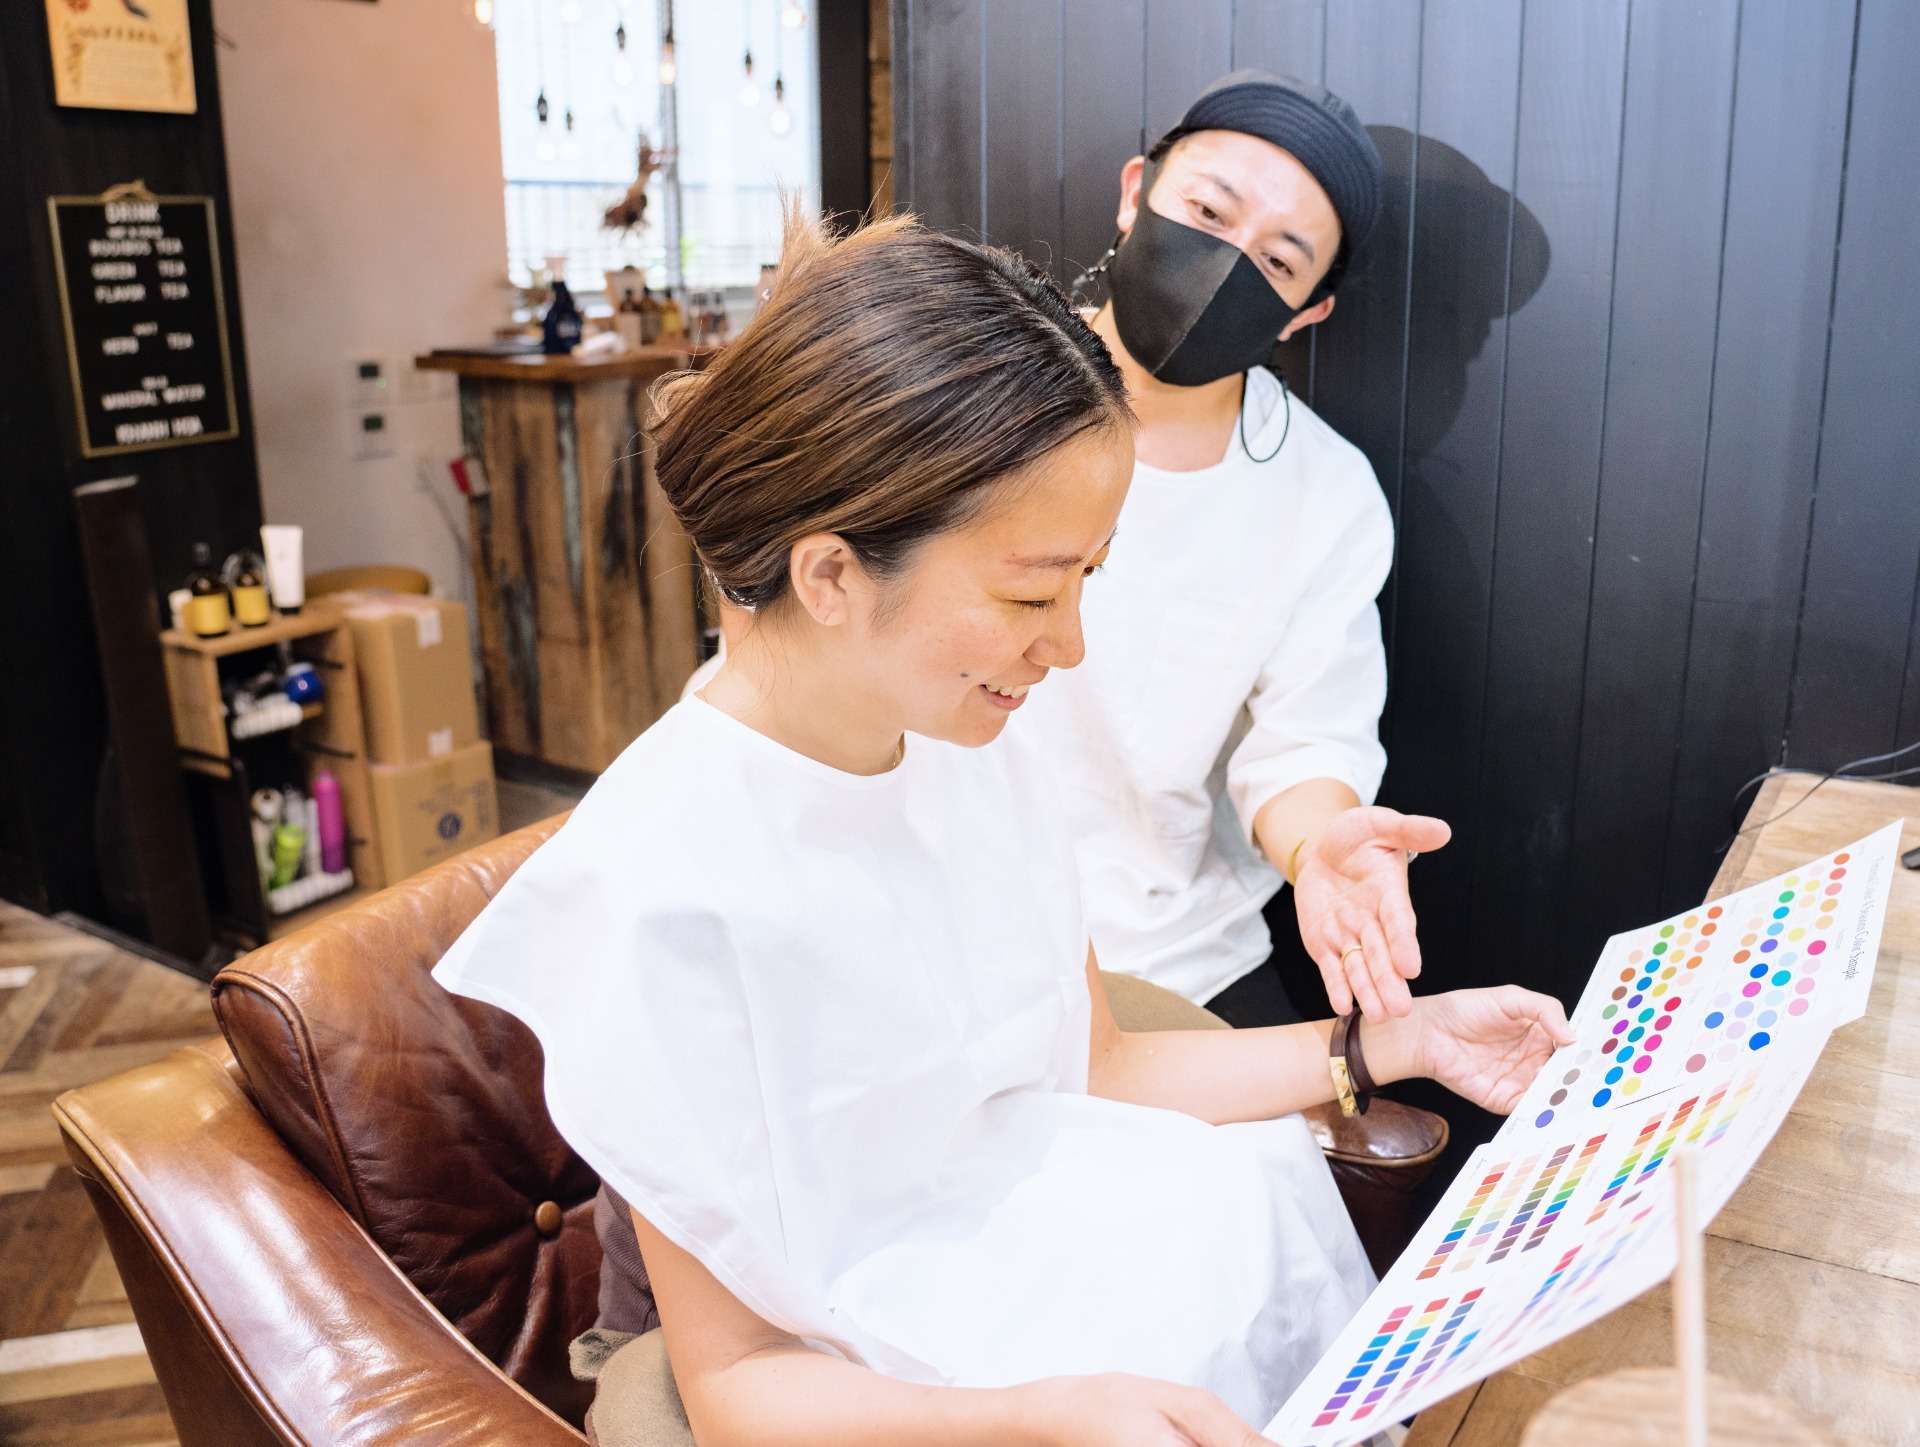 【表参道パーソナルカラー診断】 男性カラーアナリストによる診断メリット |yasu-hair designer